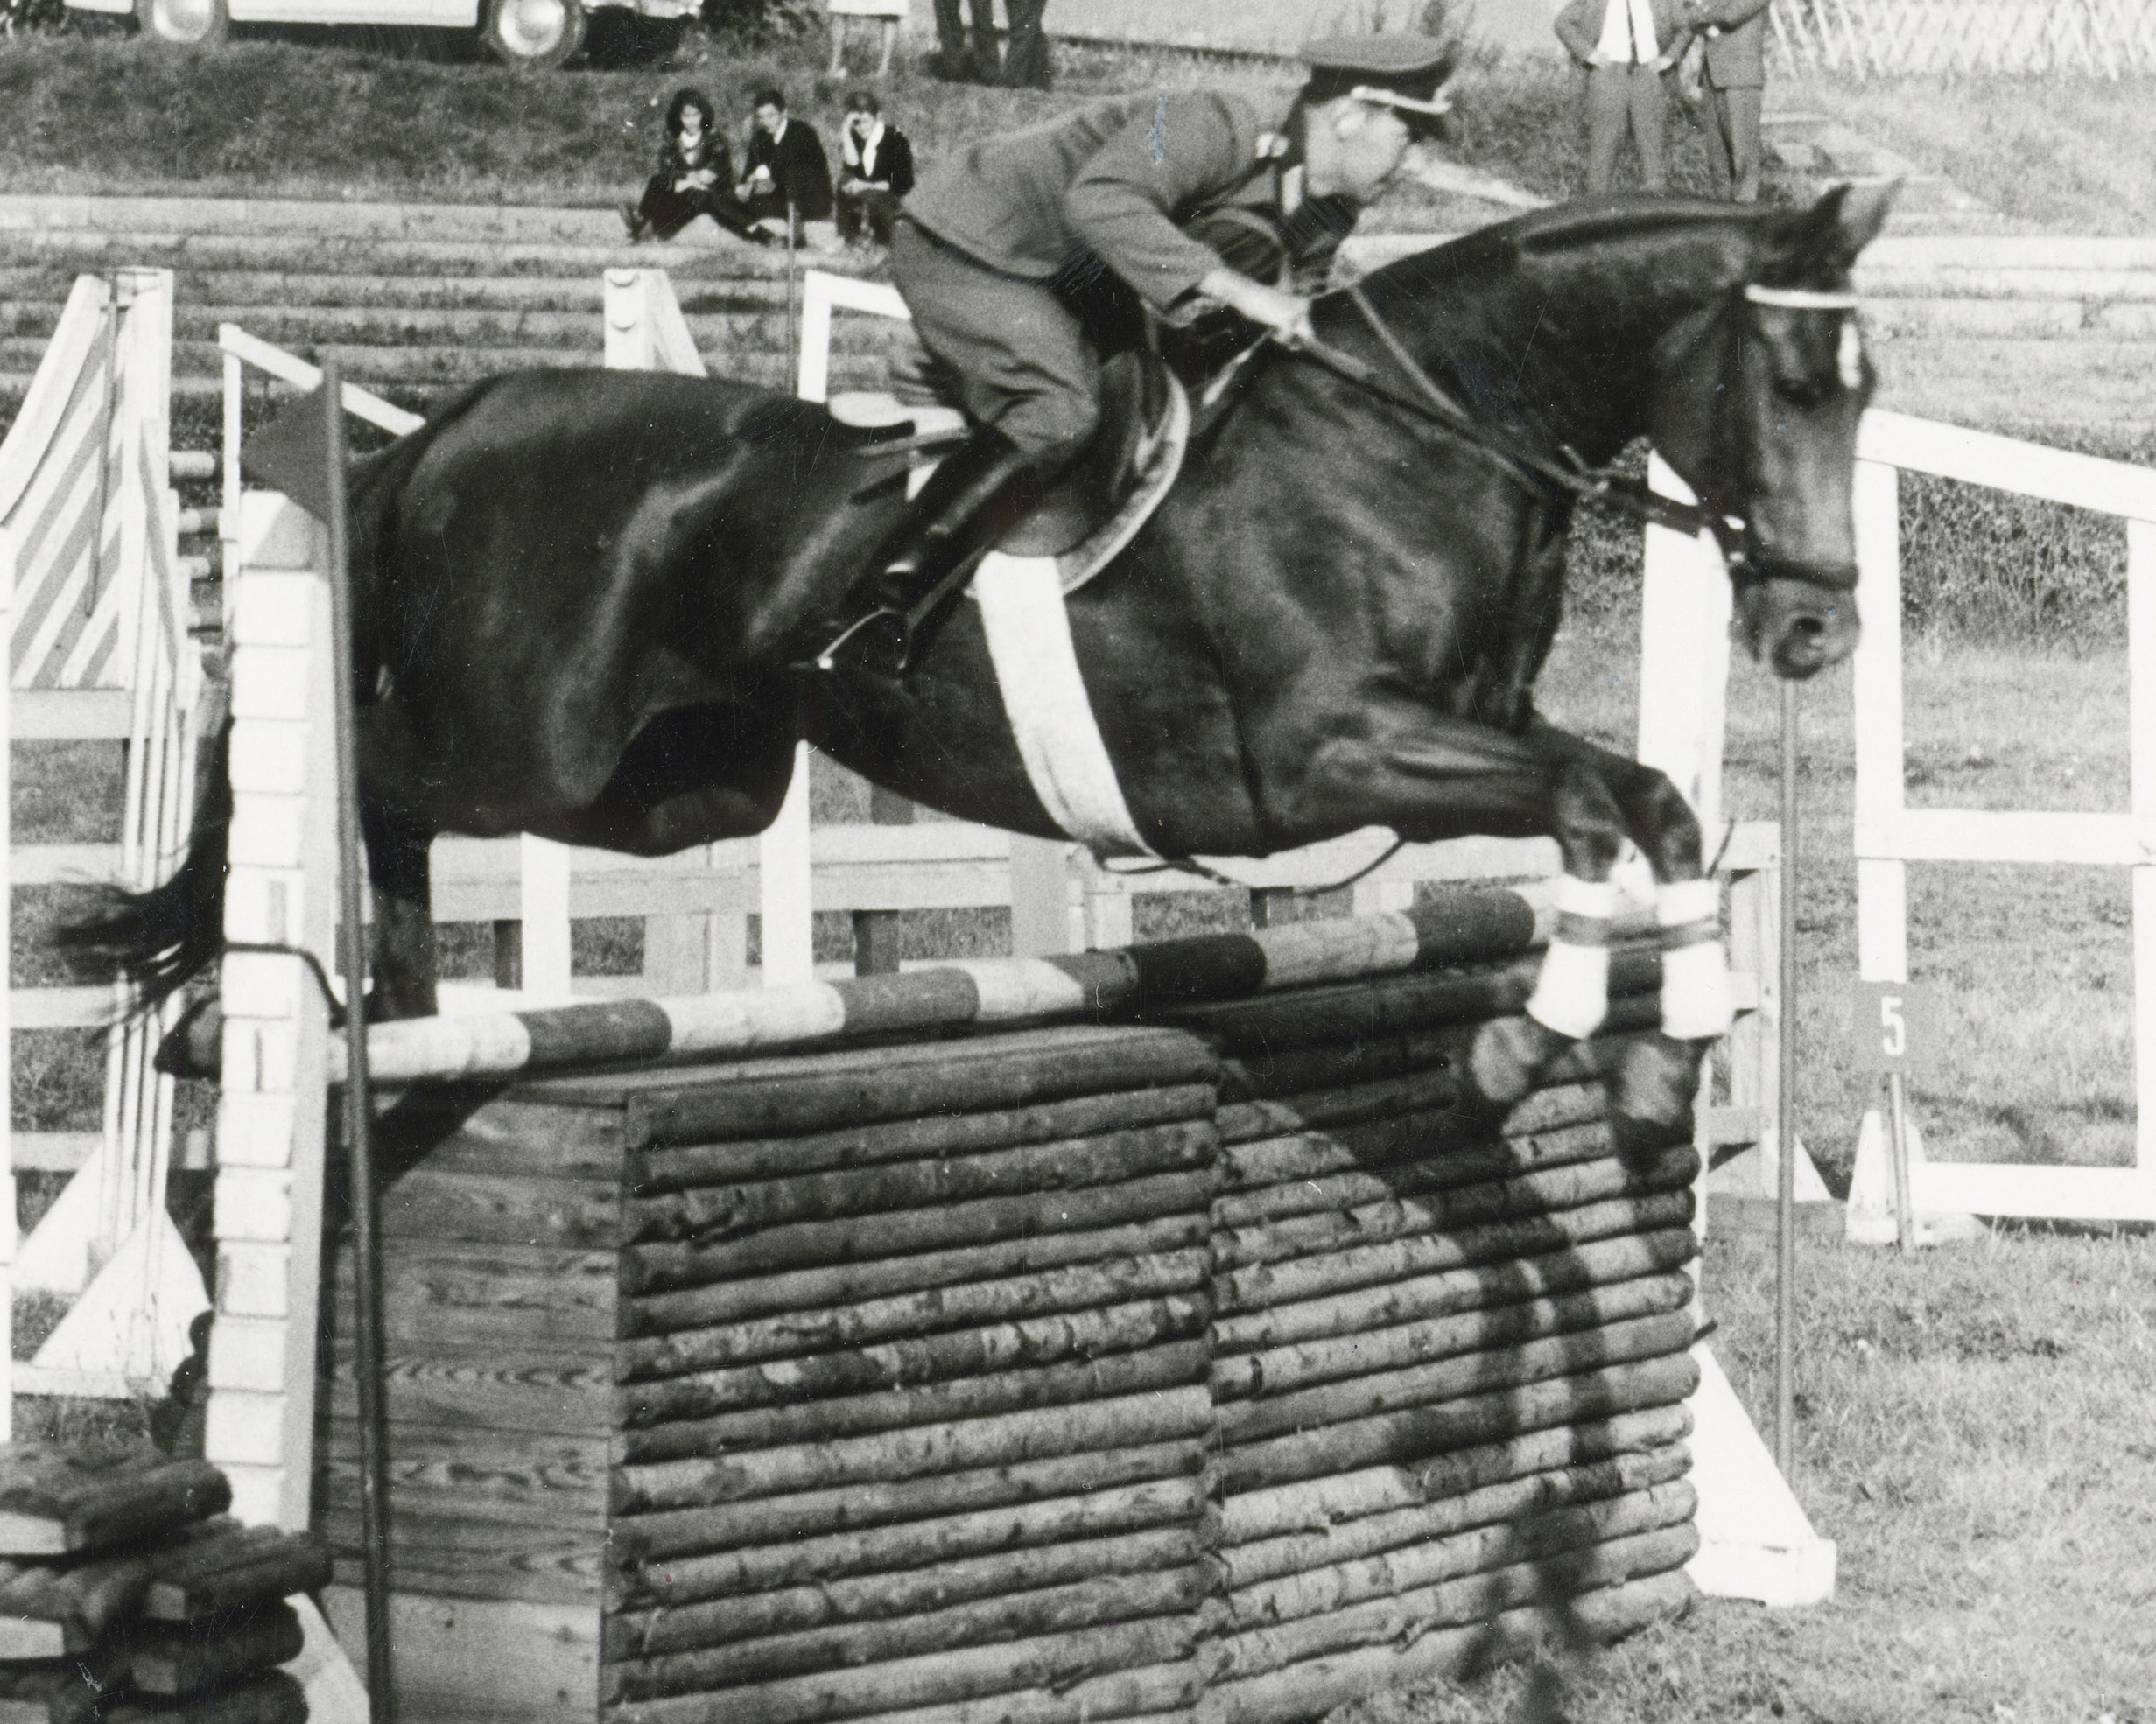 Helmut Hartmann, von Neustädter Reitern auch Käpt'n genannt, war ein Allrounder und gewann DDR-Meistertitel in allen drei olympischen Reitsportdisziplinen. Diese Foto zeigt ihn mit Normi, mit dem er 1967 in der Vielseitigkeit DDR-Meister wurde. © Hubertus Kuhne